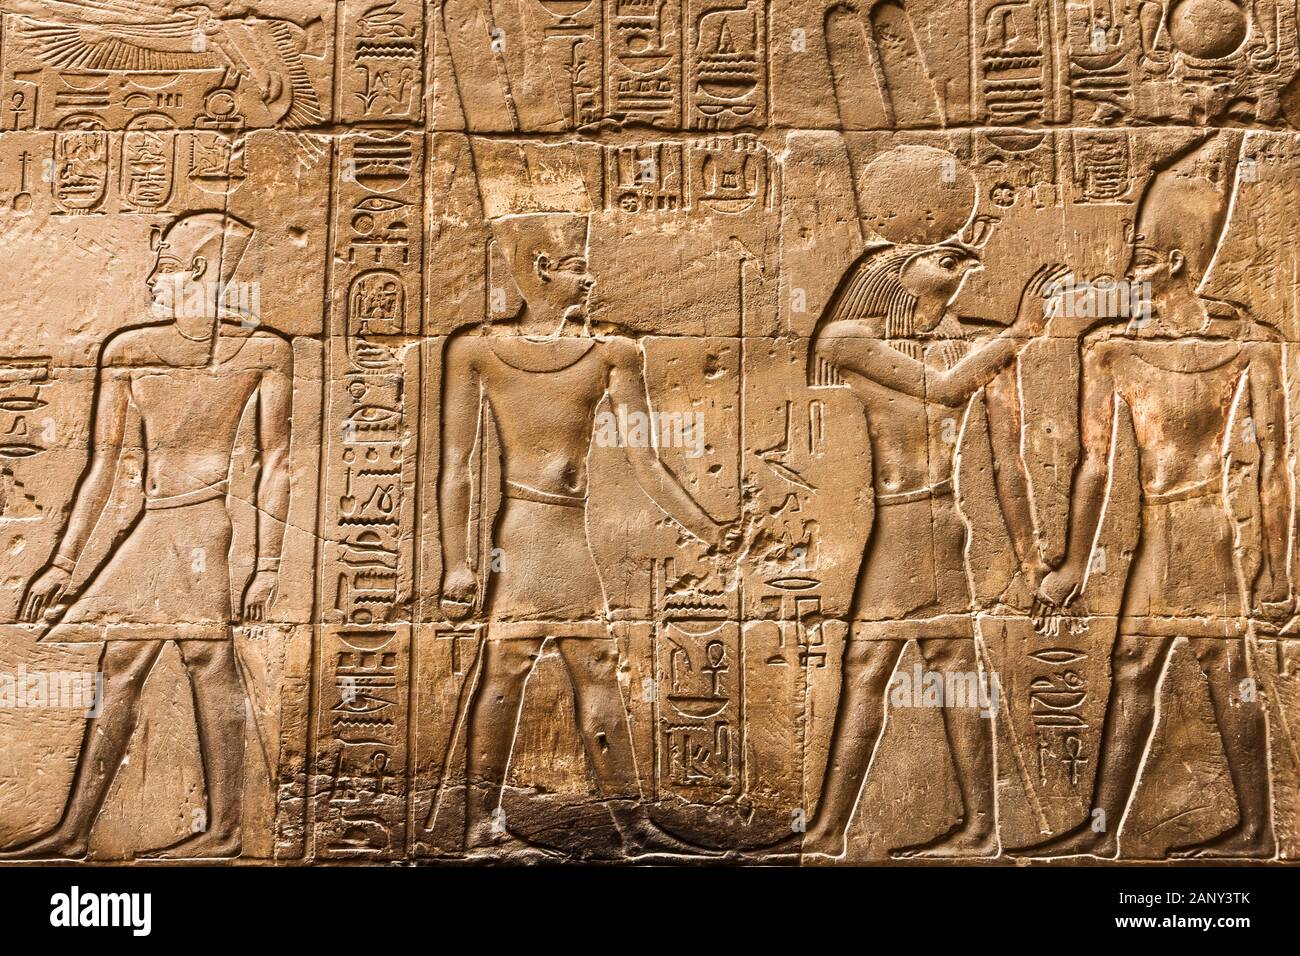 Tempio di Luxor, rilievo e iscrizione all'interno del tempio, Luxor, Egitto, Nord Africa, Africa Foto Stock